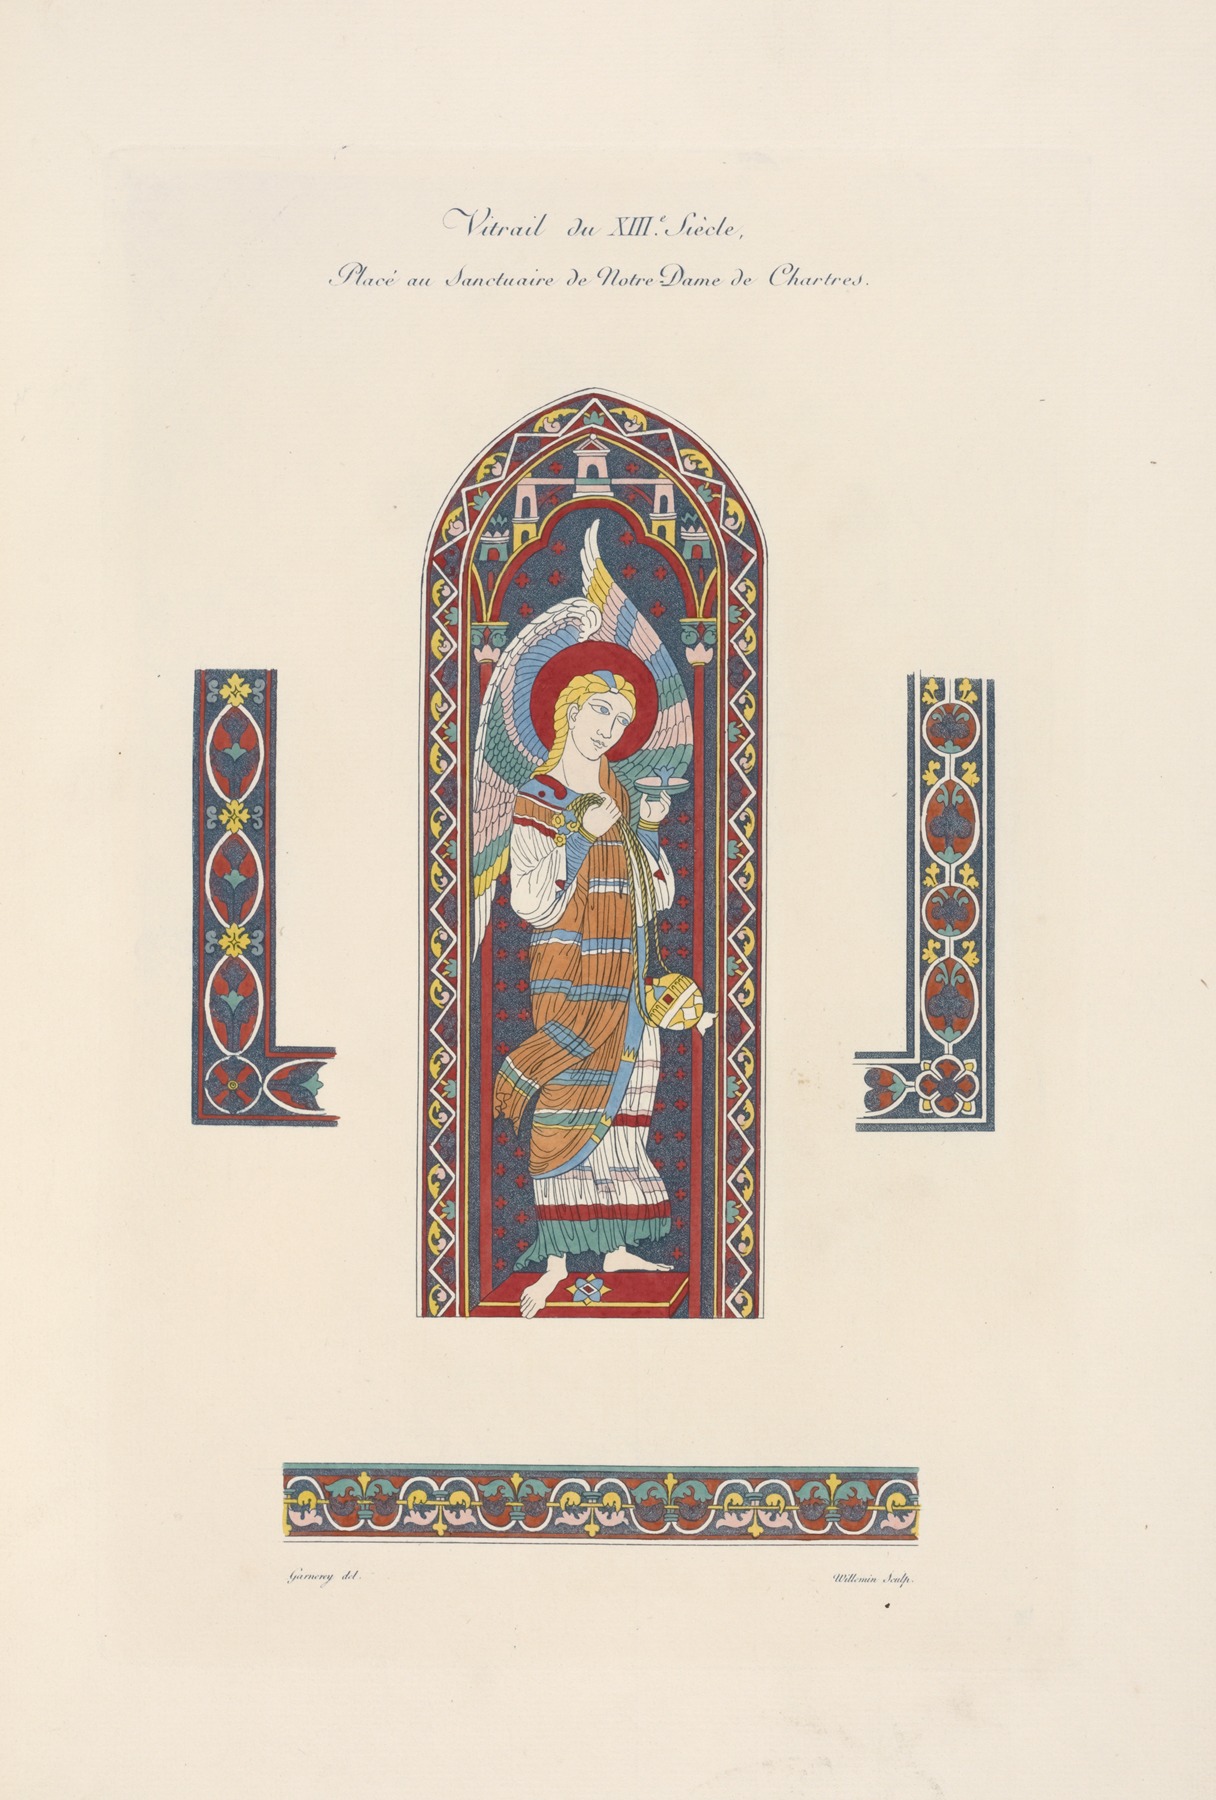 Nicolas Xavier Willemin - Vitrail du XIIIe. siècle. Placé au sanctuaire de Notre Dame de Chartres.